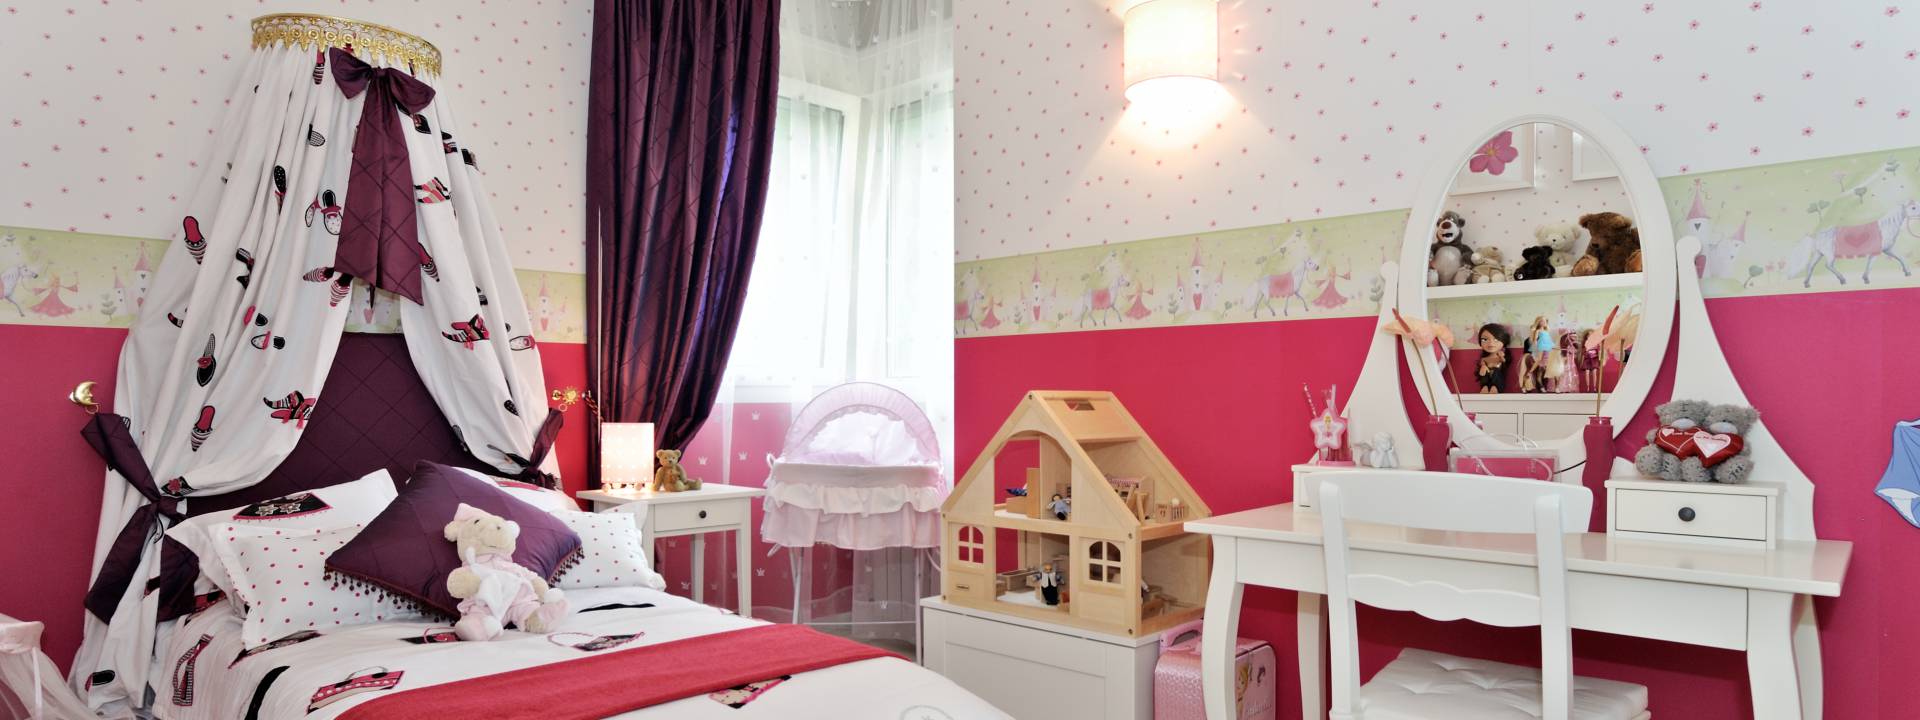 luxury bedroom, contemporary interior design, Yvette Taylor London